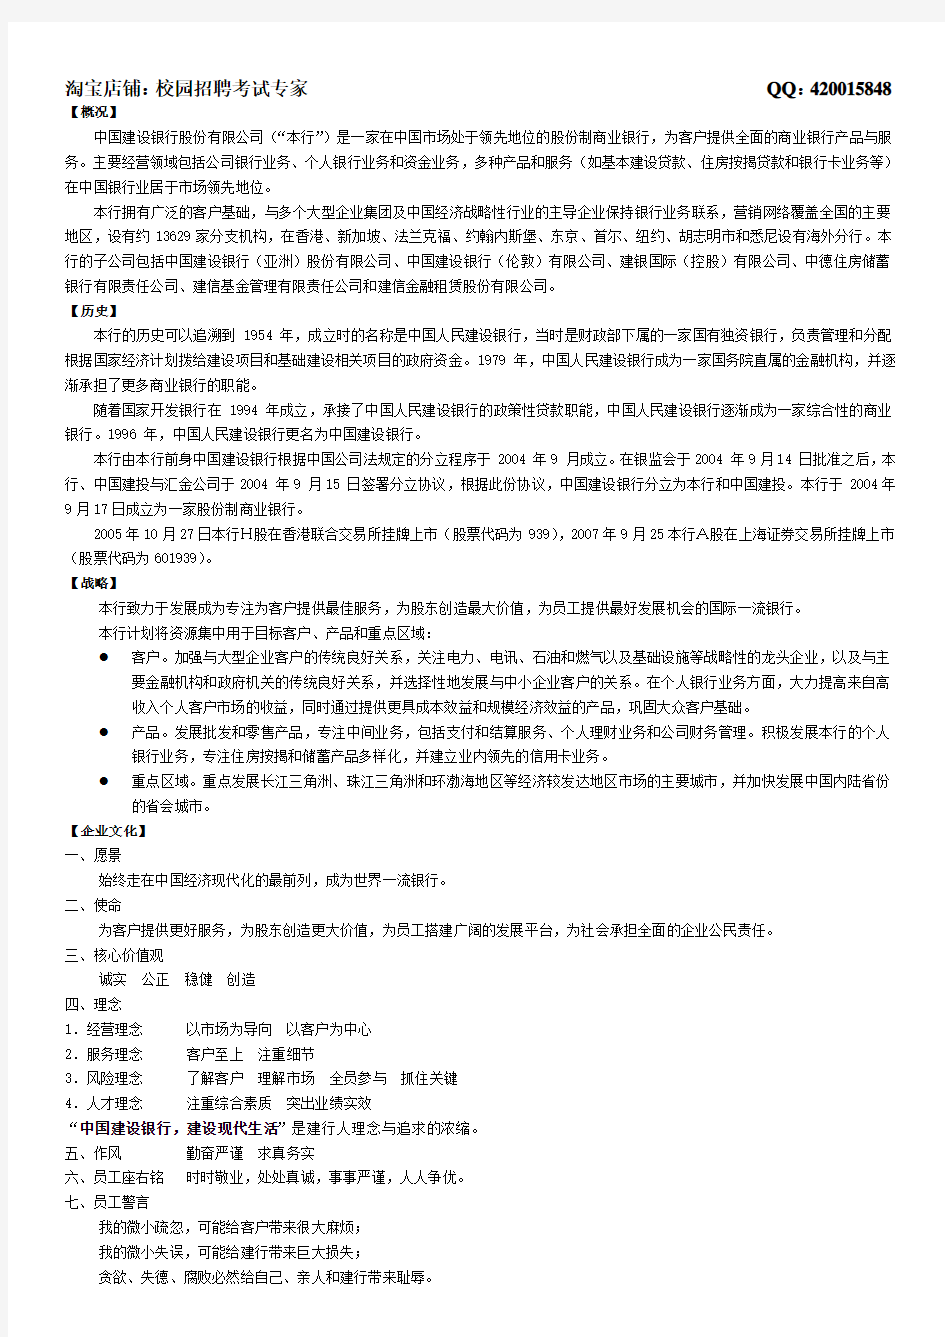 中国建设银行简介及背景知识(4页)无需打印,了解即可